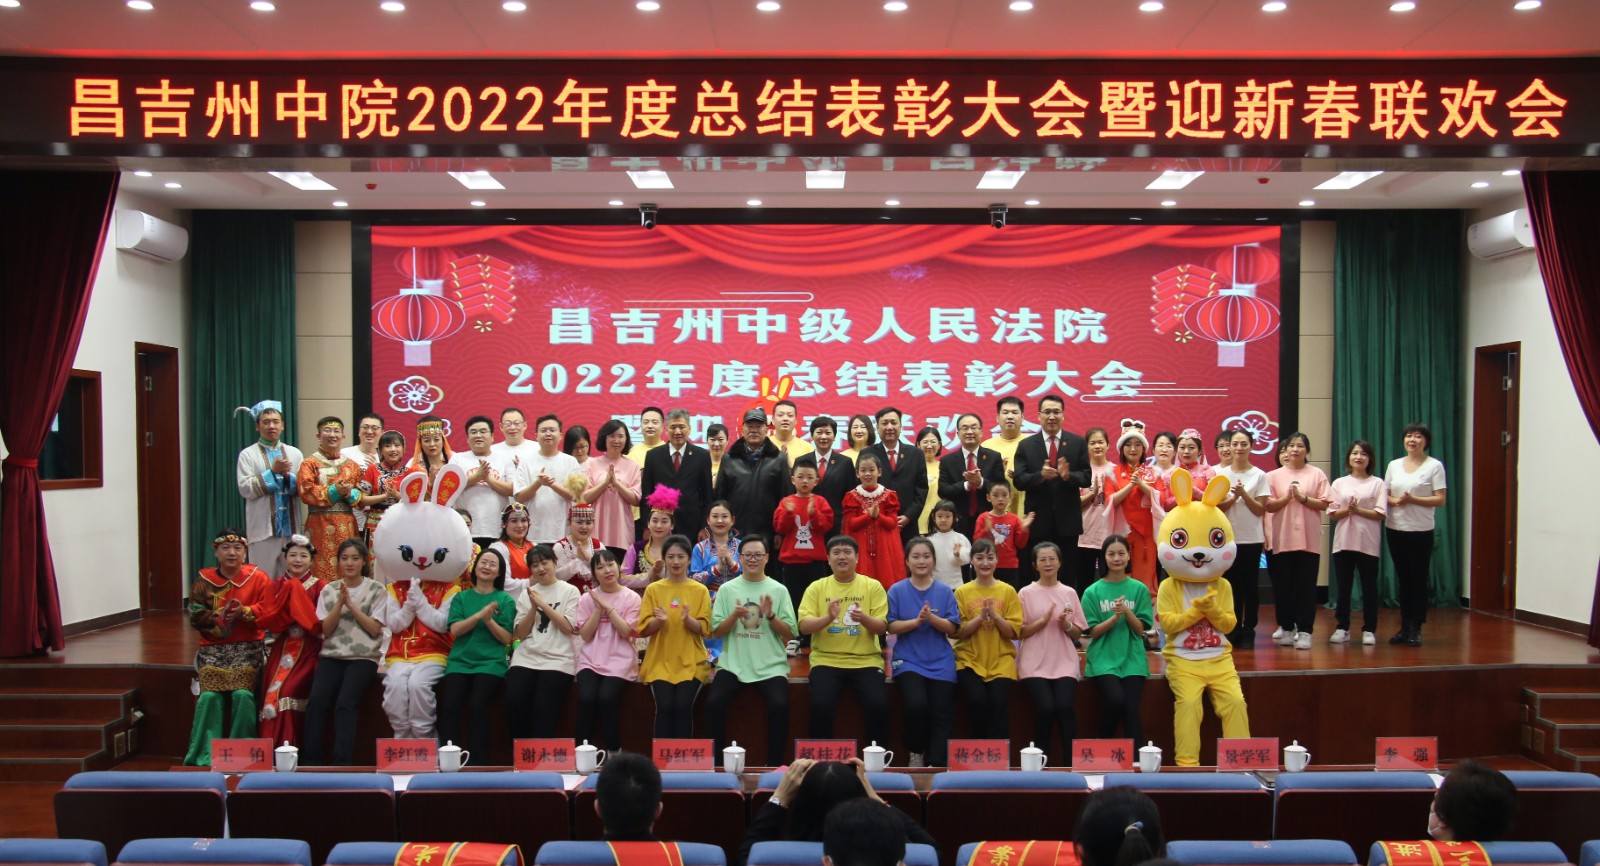 昌吉州中院举办2022年度总结表彰大会暨迎新春联欢会